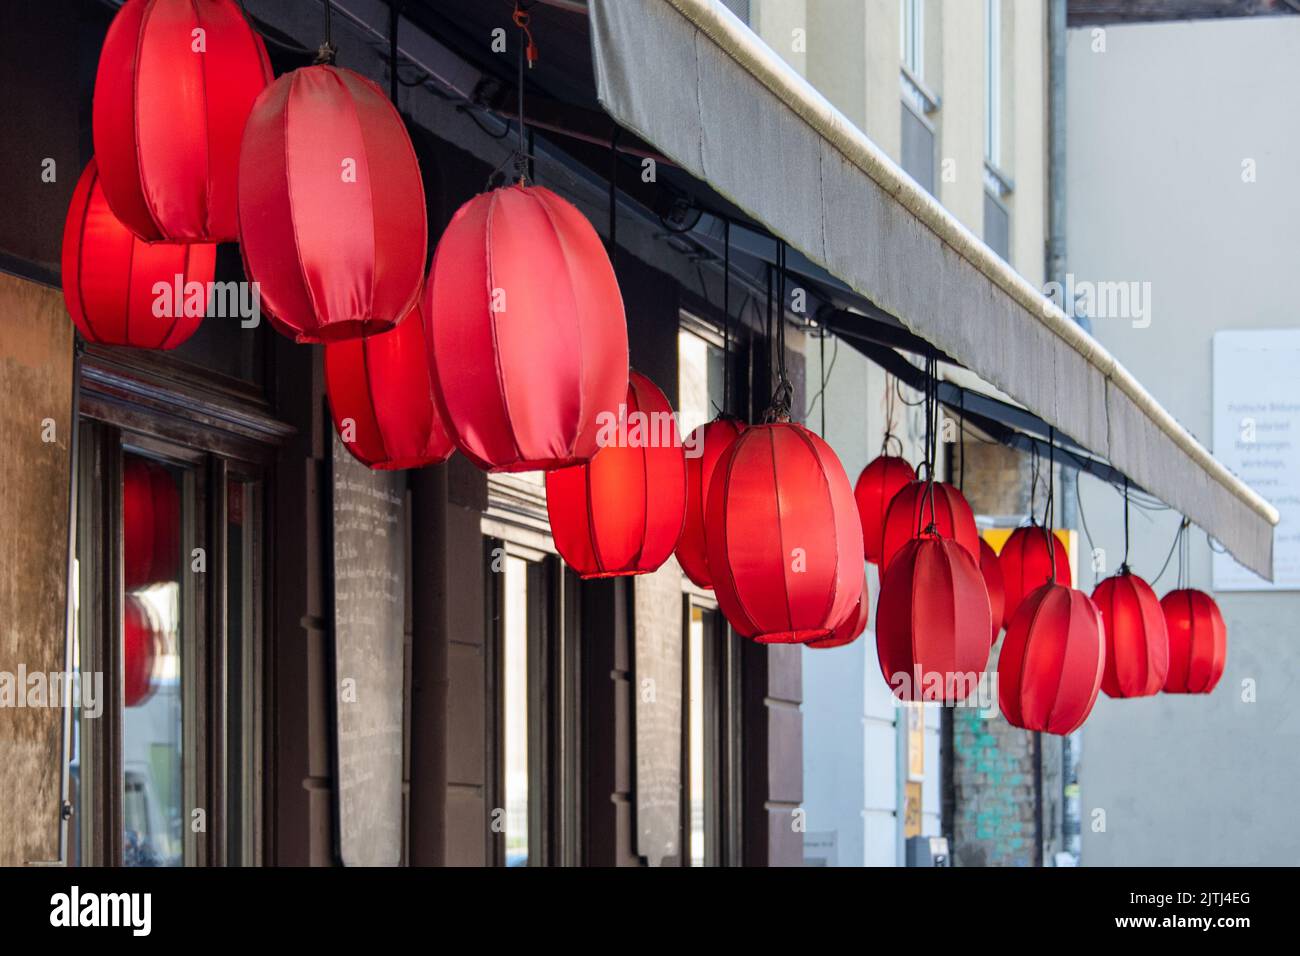 Lanternes chinoises rouges suspendues à l'extérieur comme une guirlande.  Lanternes décoratives traditionnelles asiatiques lumineuses pour les  restaurants, les cafés ou les maisons. Symboles de richesse, de la famille  Photo Stock - Alamy